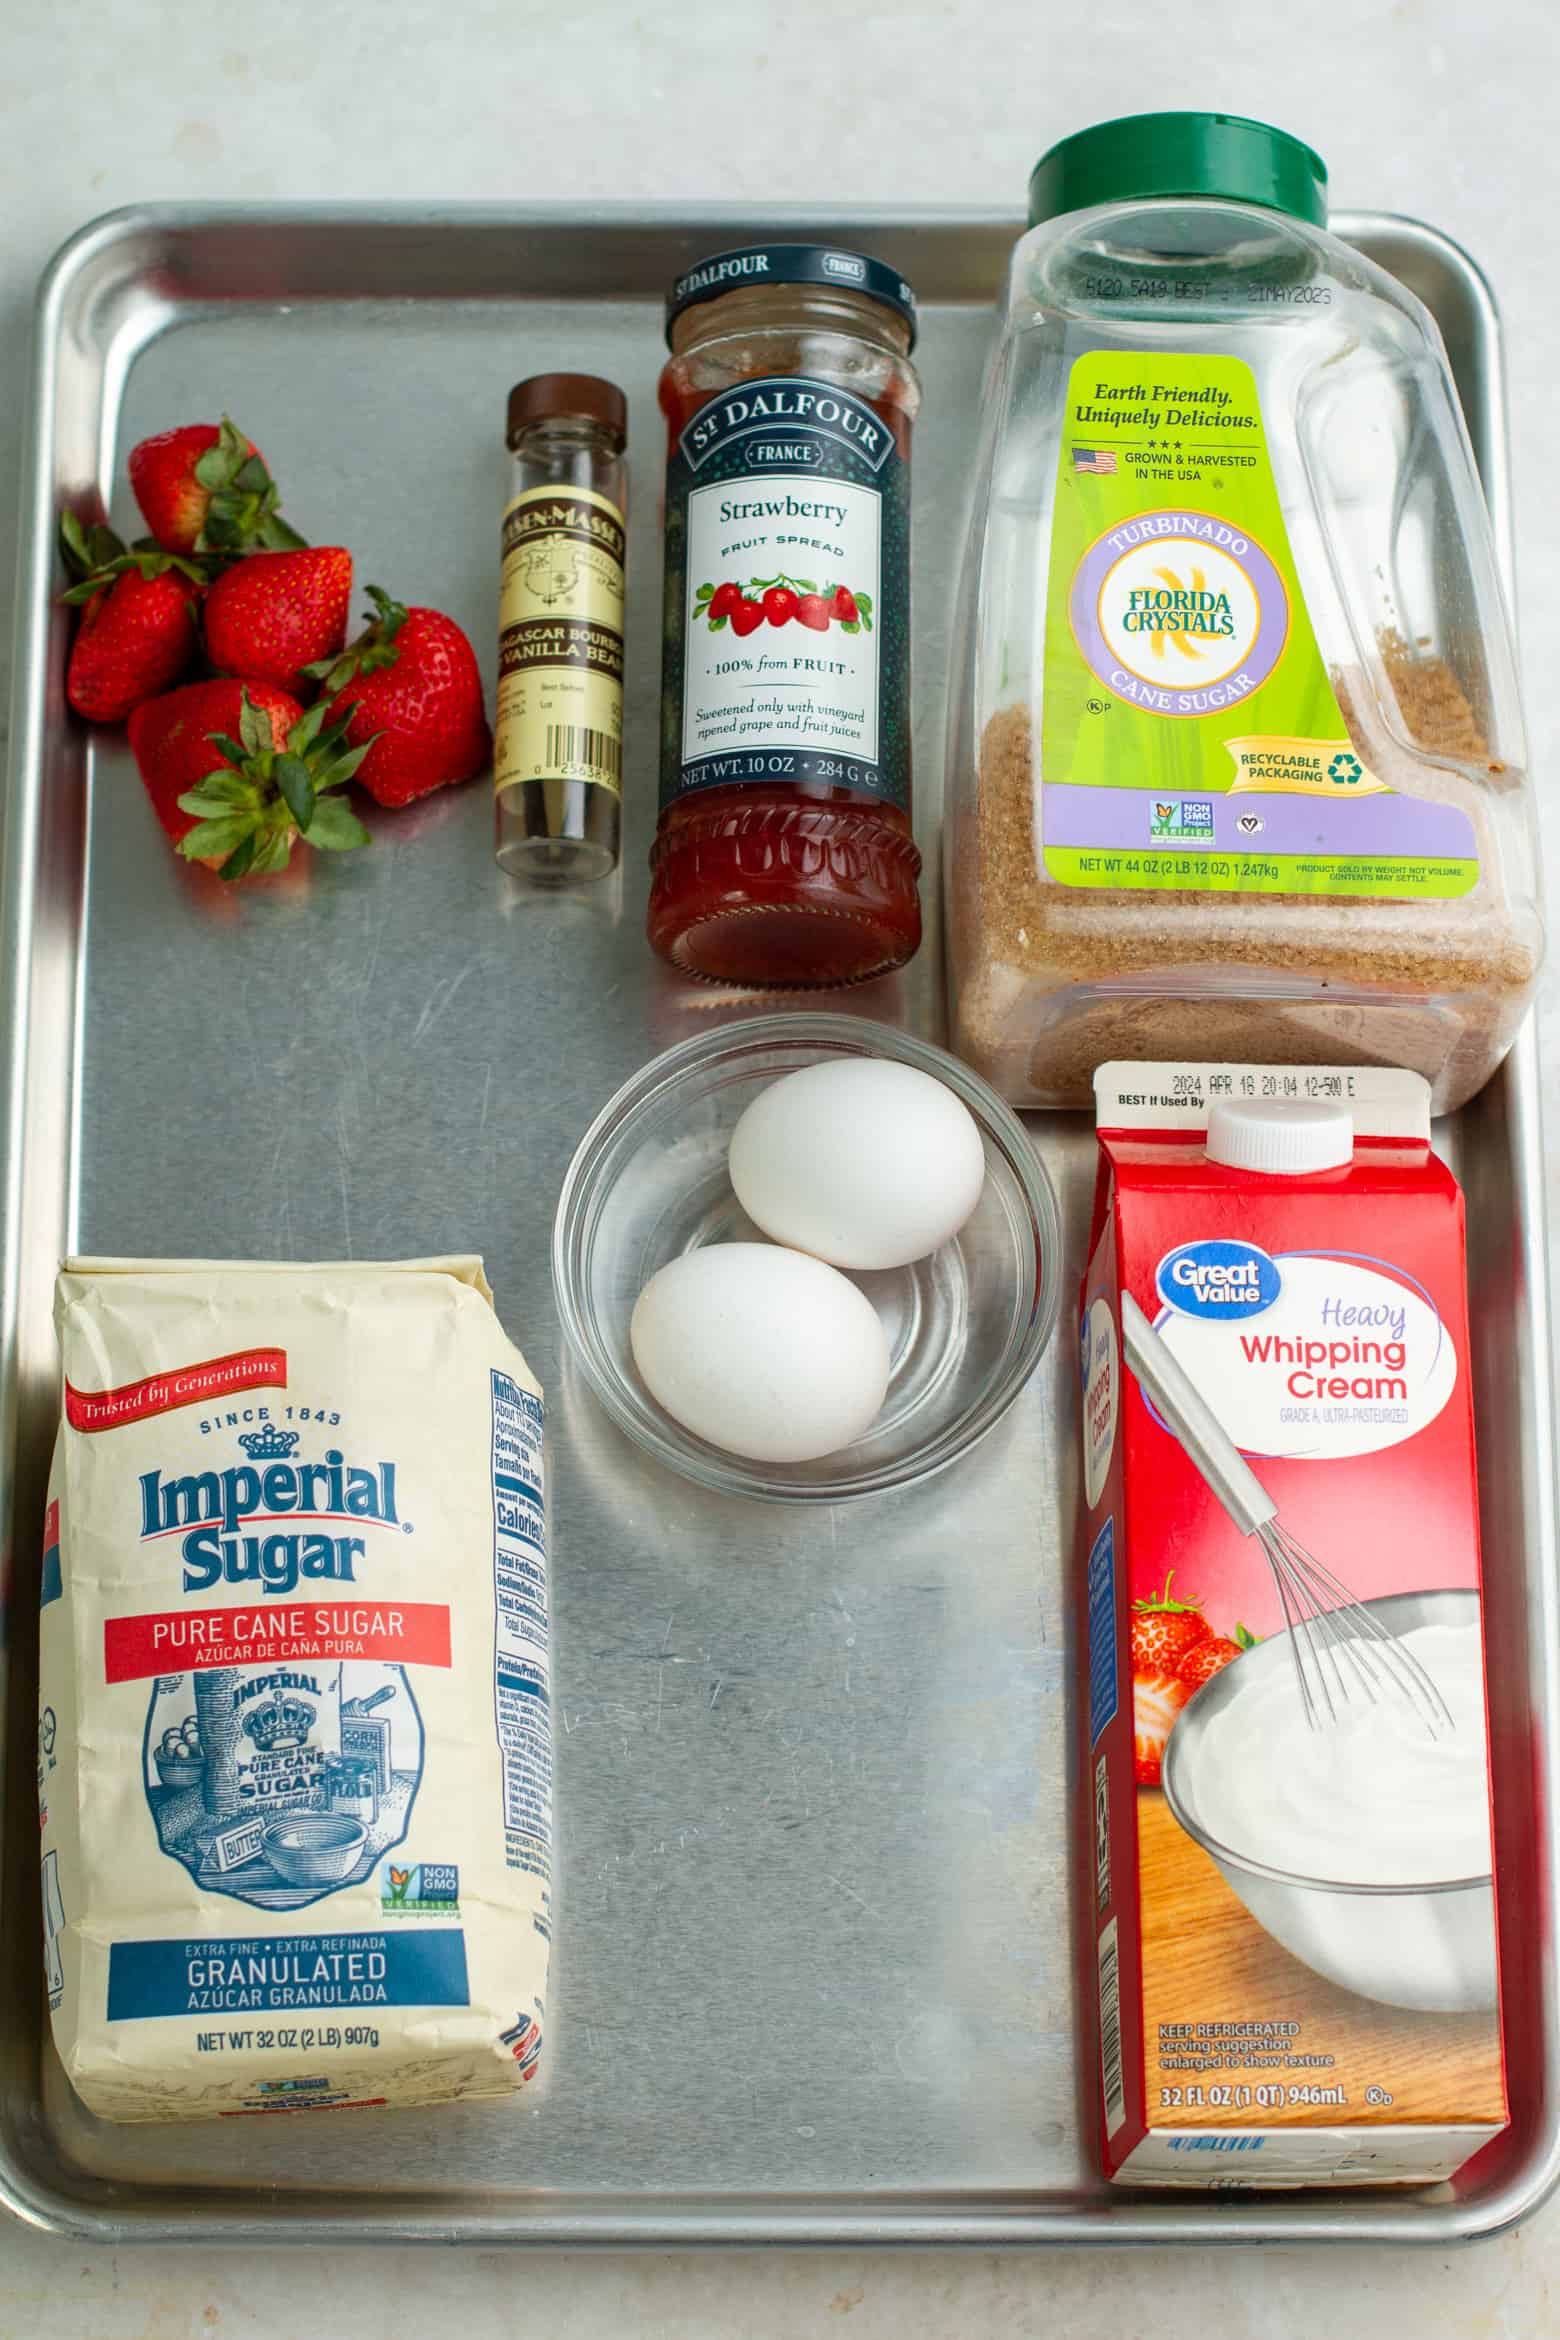 Strawberry Creme Brulee ingredients